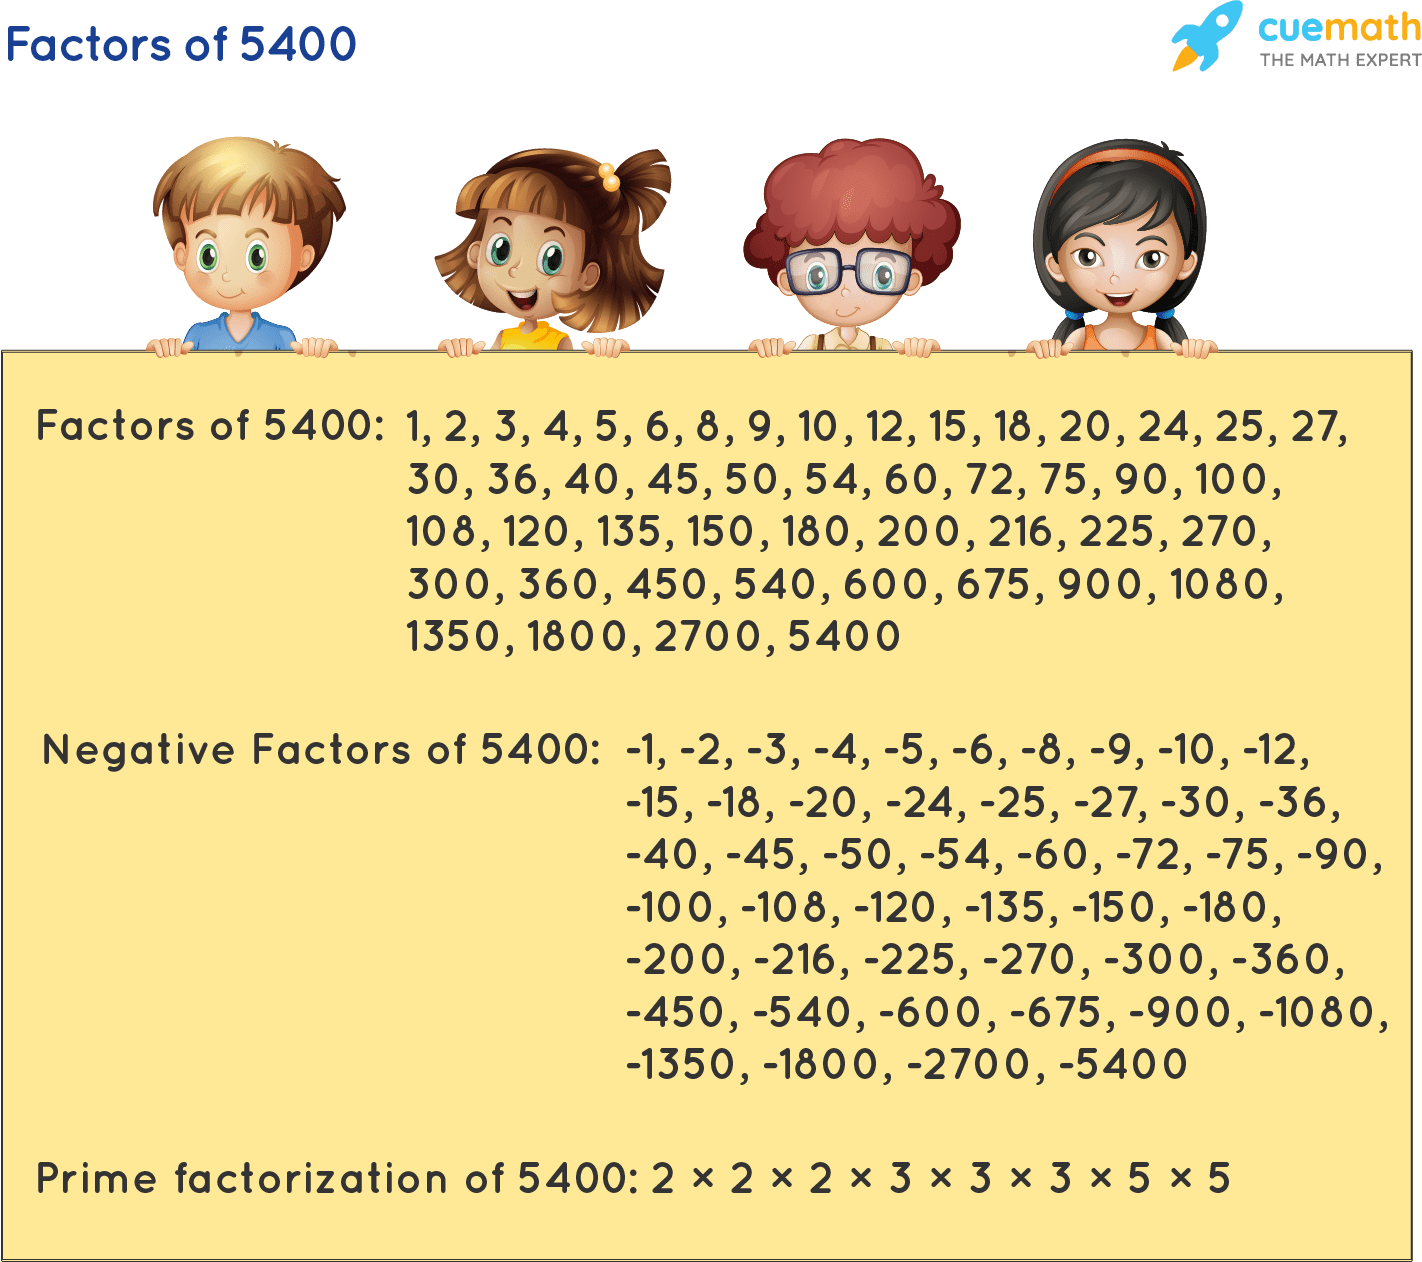 Factors of 5400